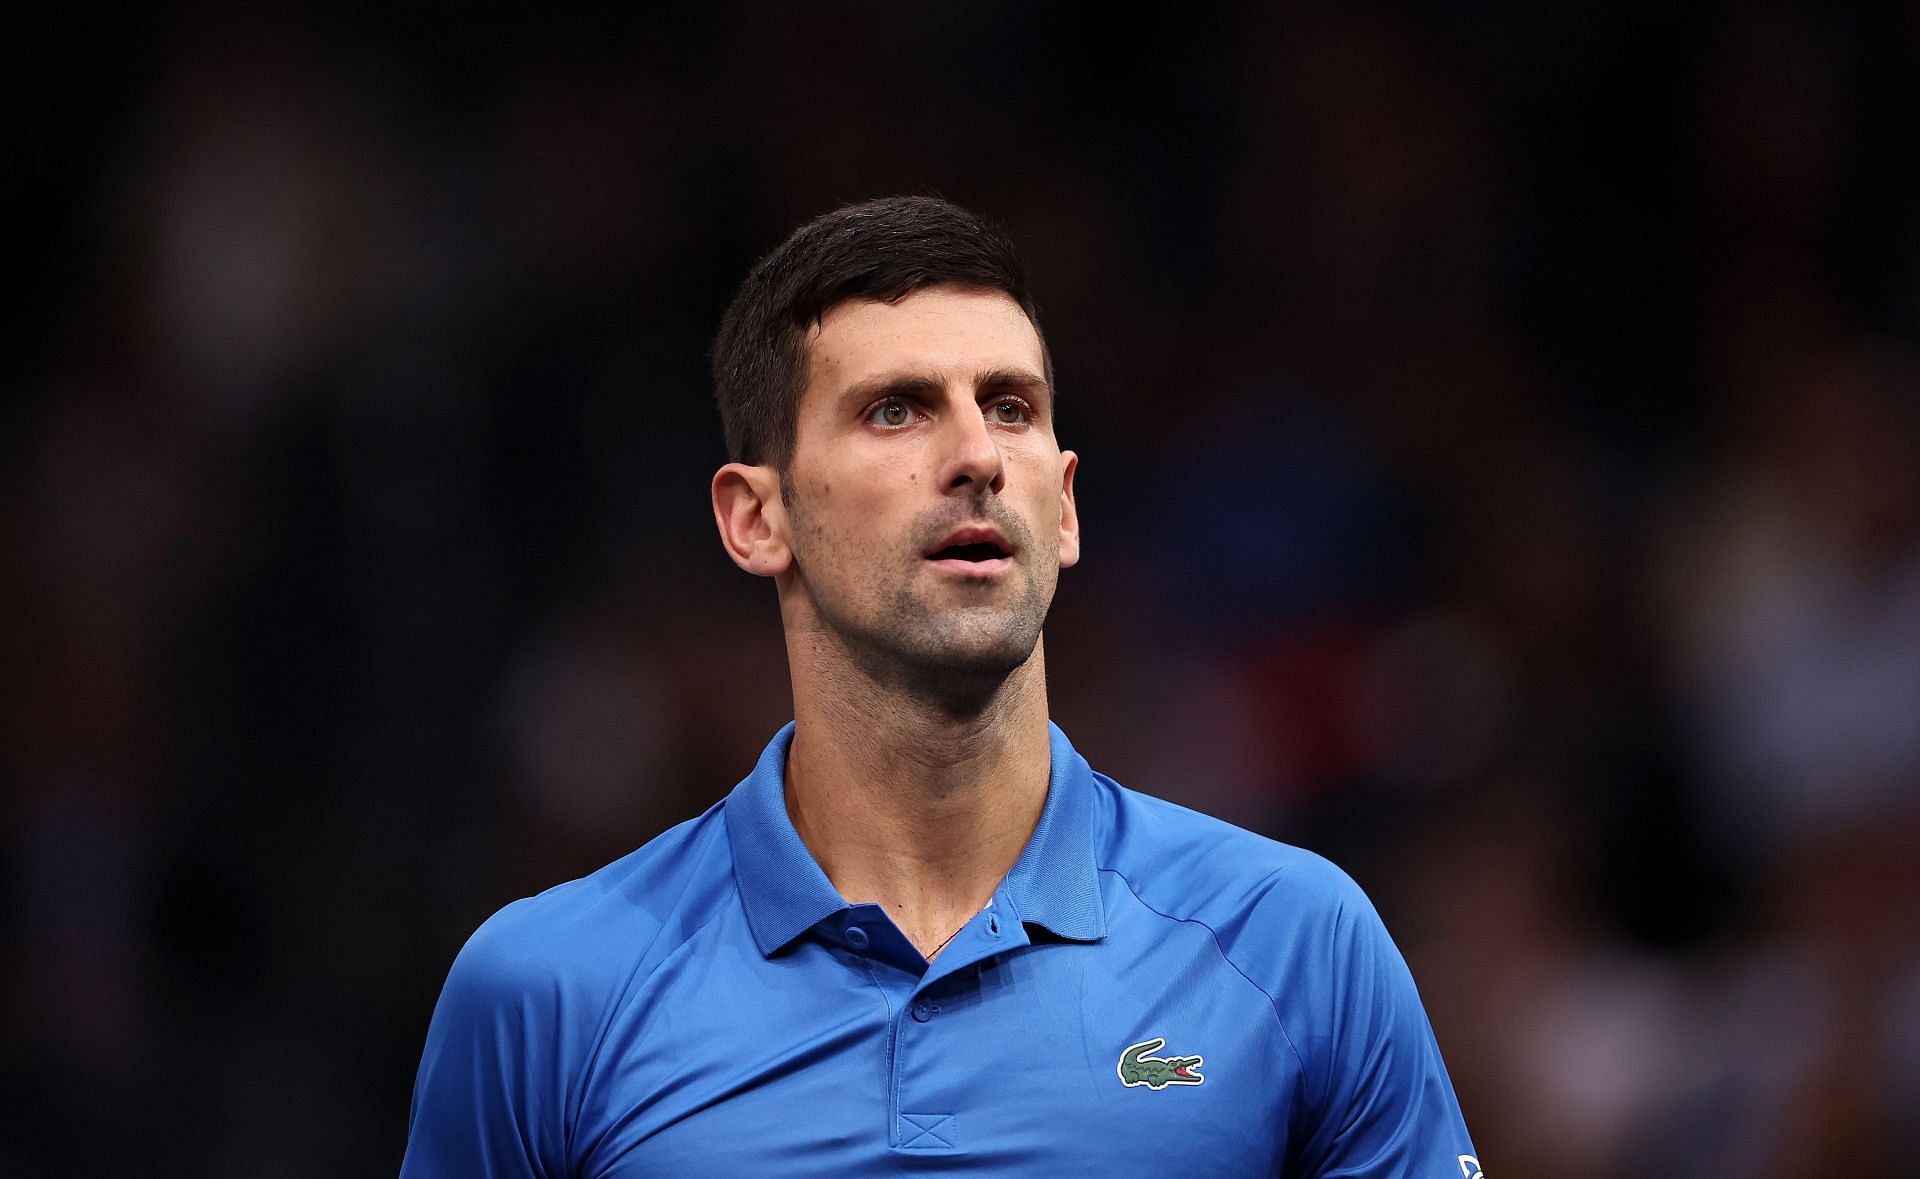 Novak Djokovic at the Rolex Paris Masters 2022